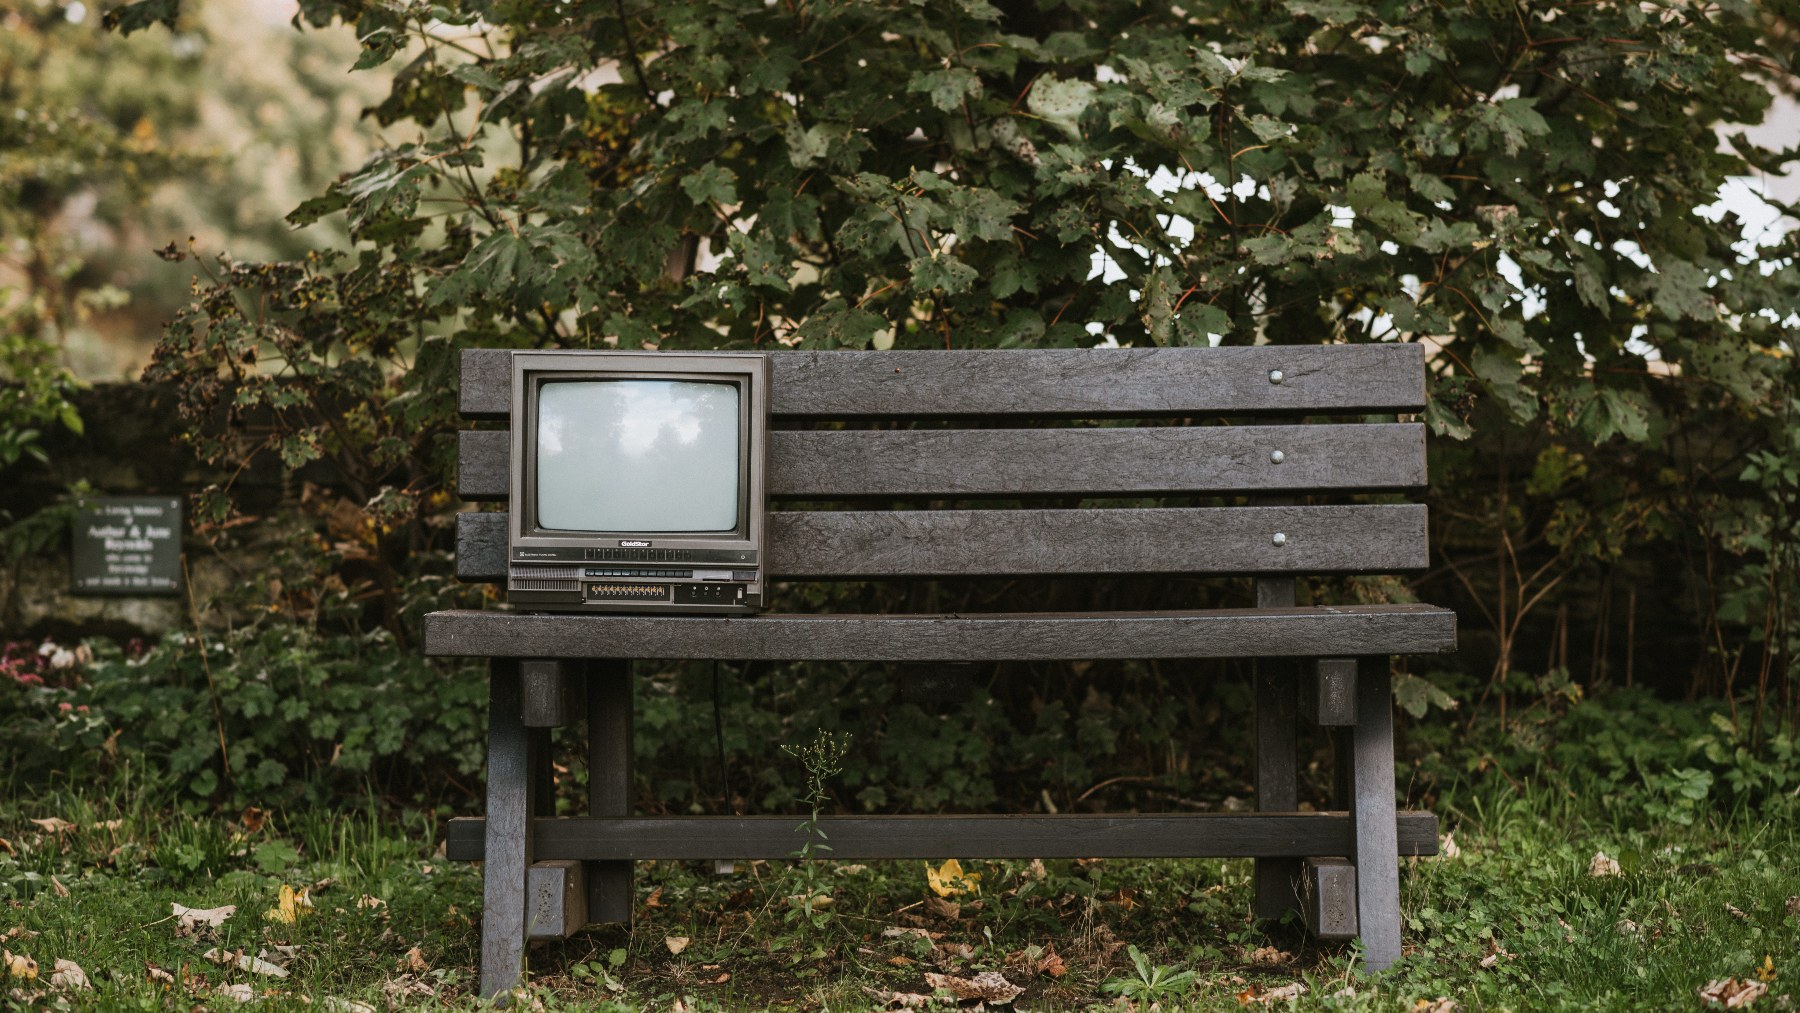 ¿Cómo saber la antigüedad de nuestra televisión?